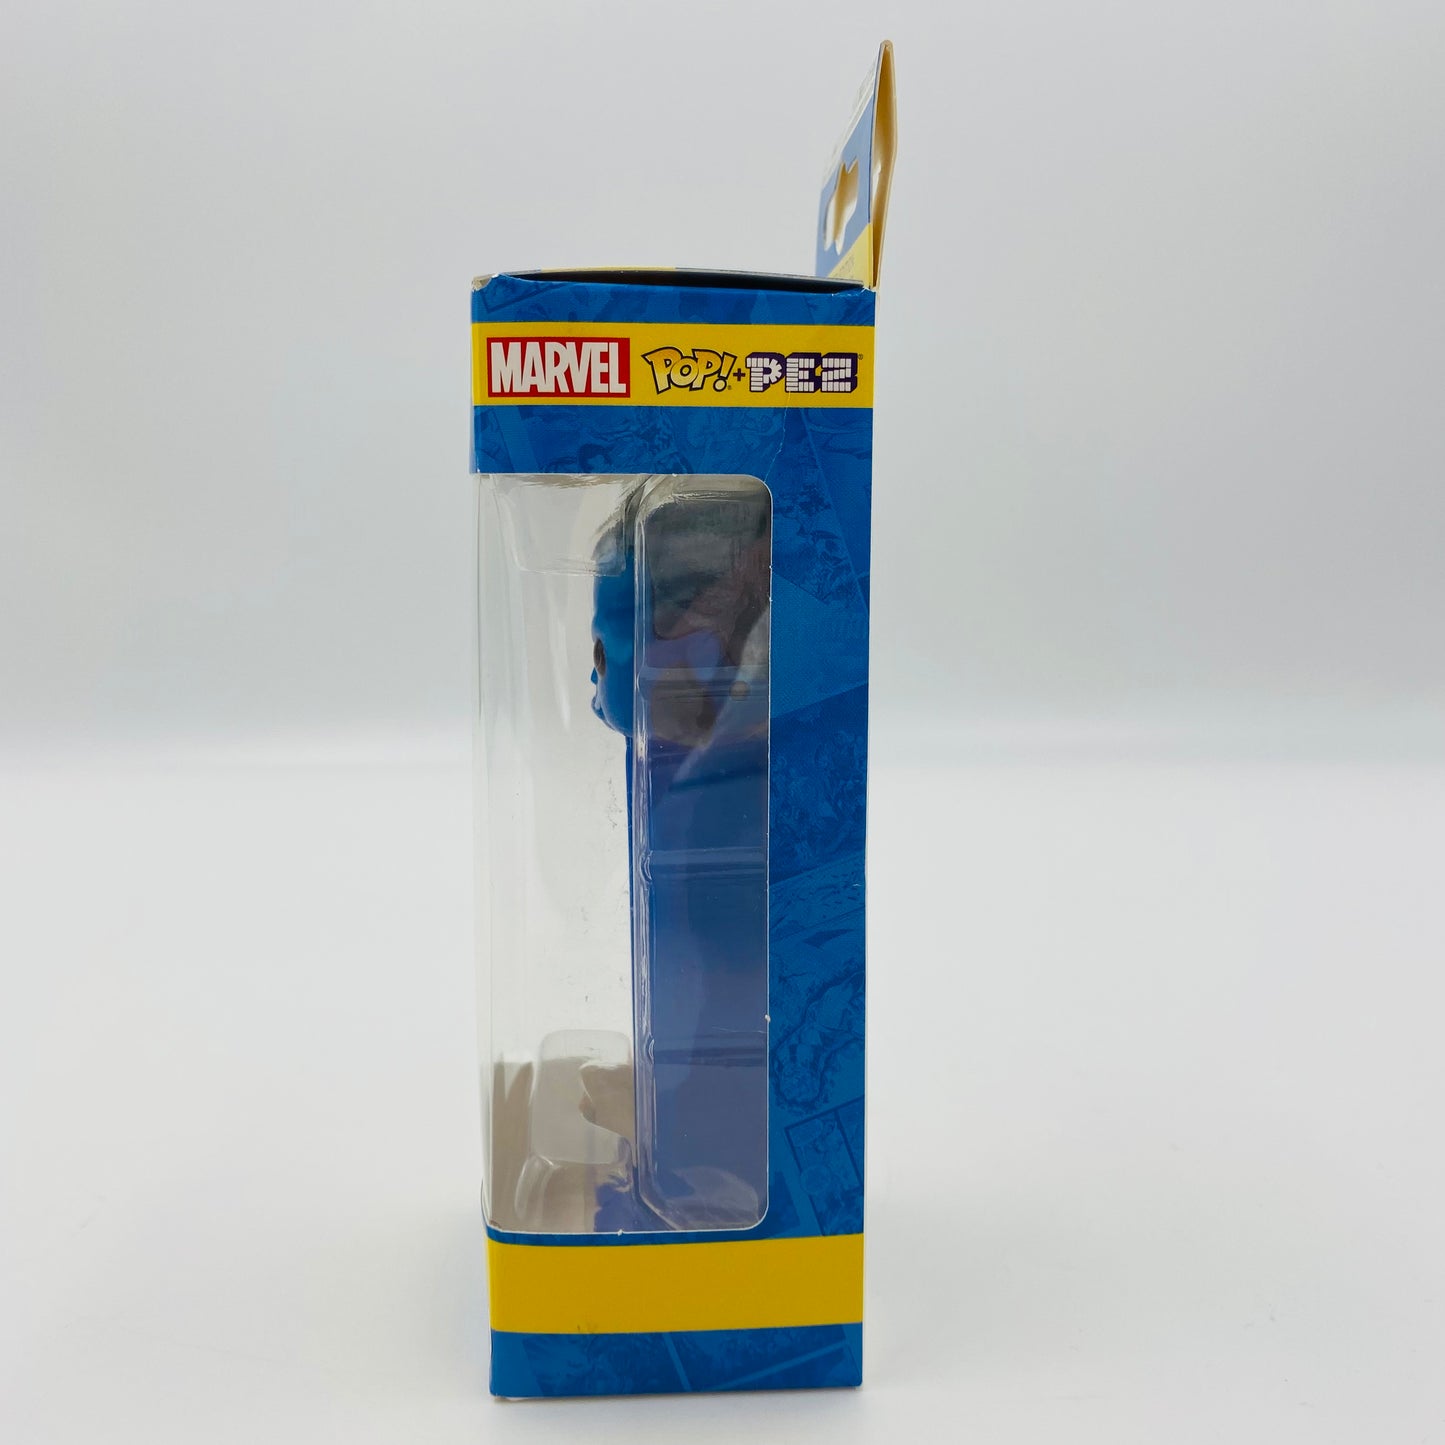 Marvel X-Men Beast Pop! + PEZ dispenser (2019) boxed